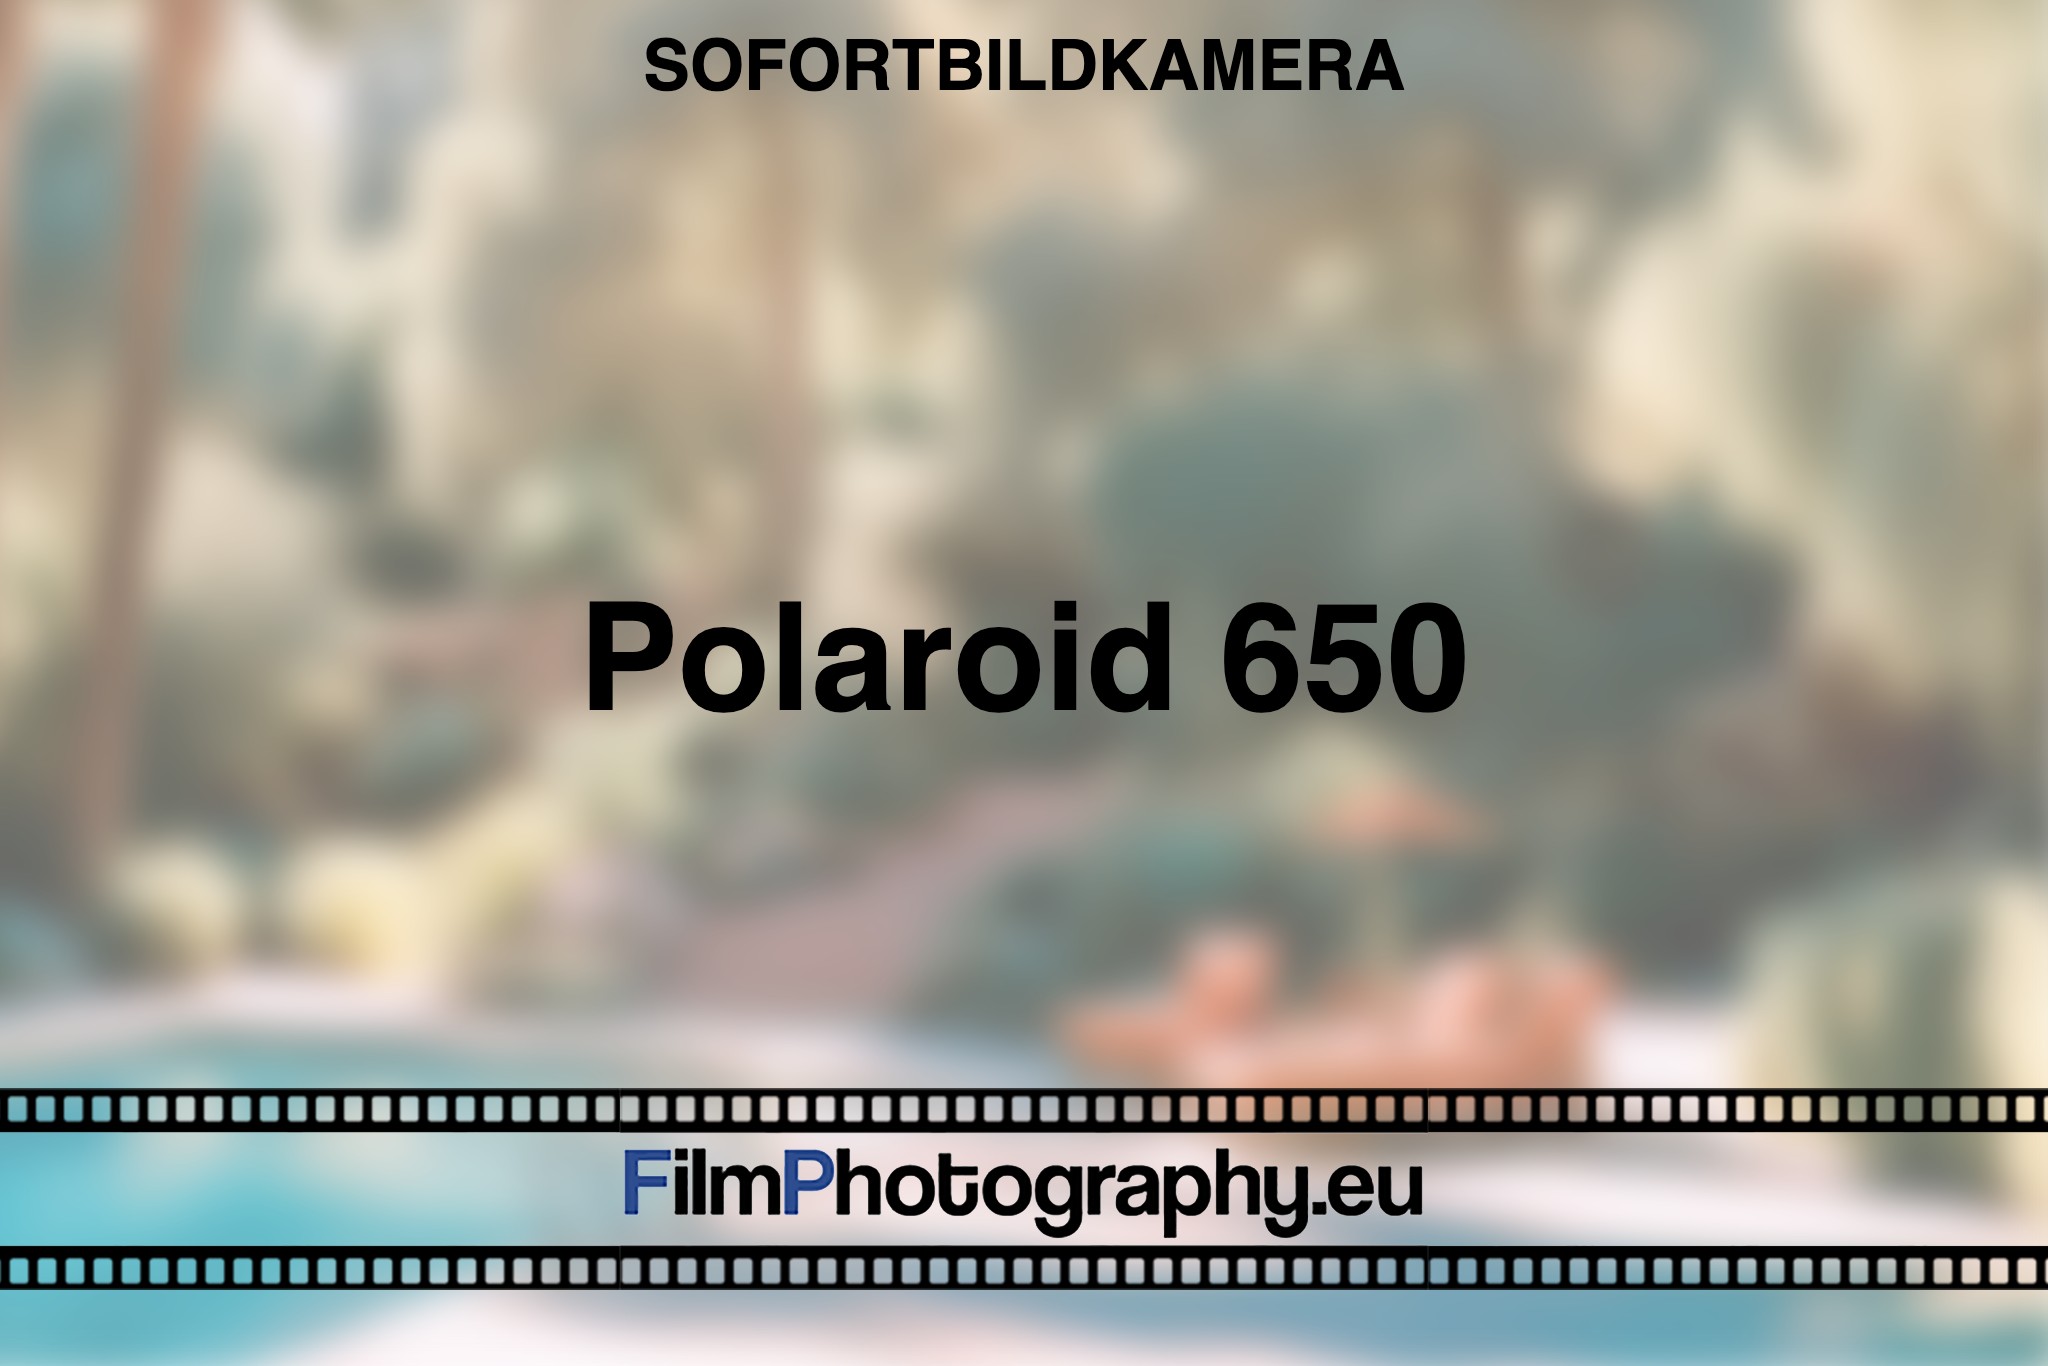 polaroid-650-sofortbildkamera-bnv